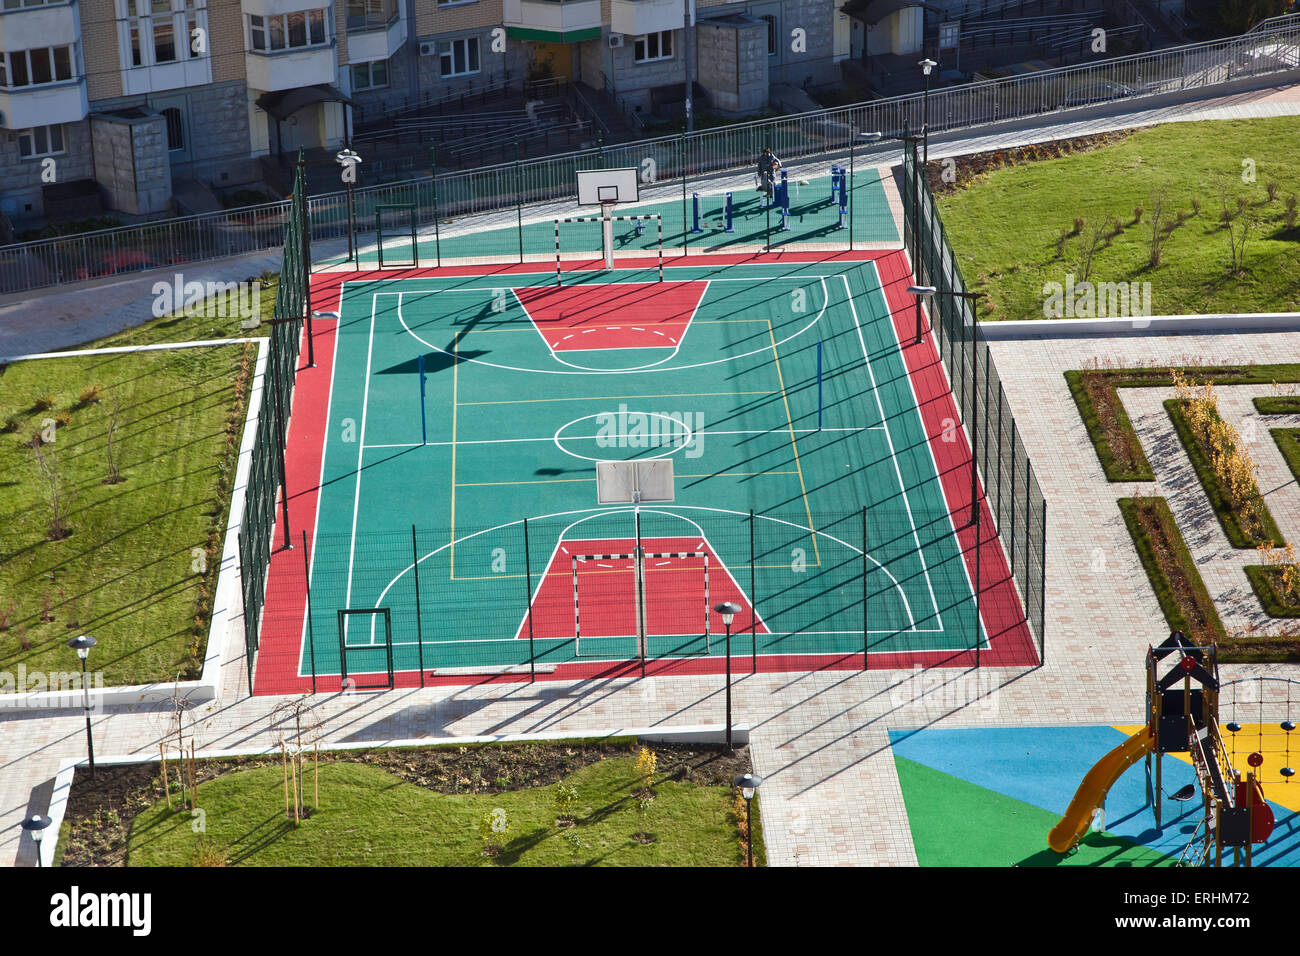 Stade vide football et terrain de basket-ball. Aire de jeux pour enfants  Photo Stock - Alamy